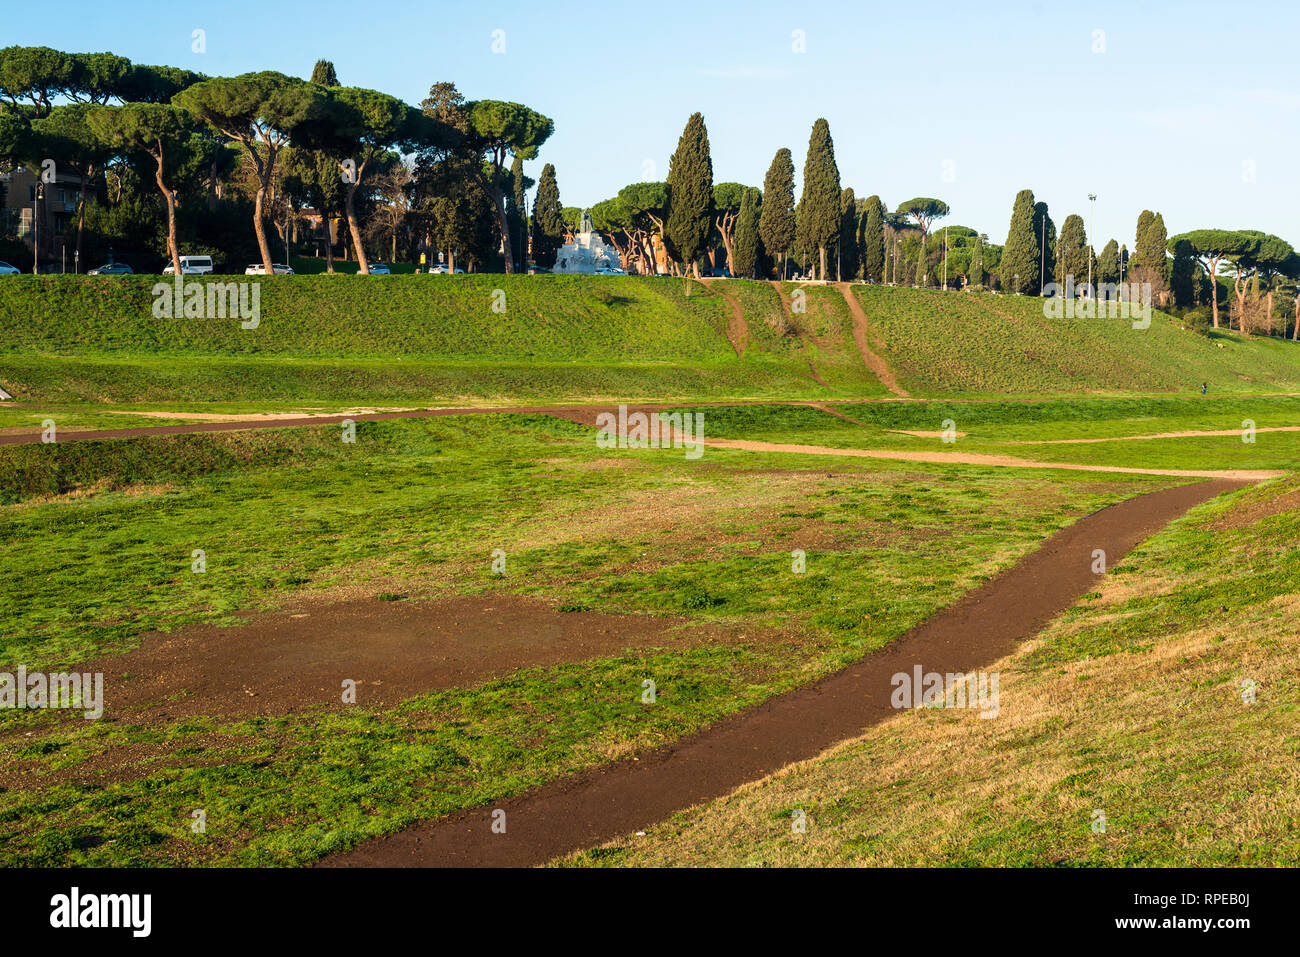 Le Circus Maximus est un ancien stade de courses de char romain et lieu de divertissement de masse situé à Rome, Italie. Banque D'Images